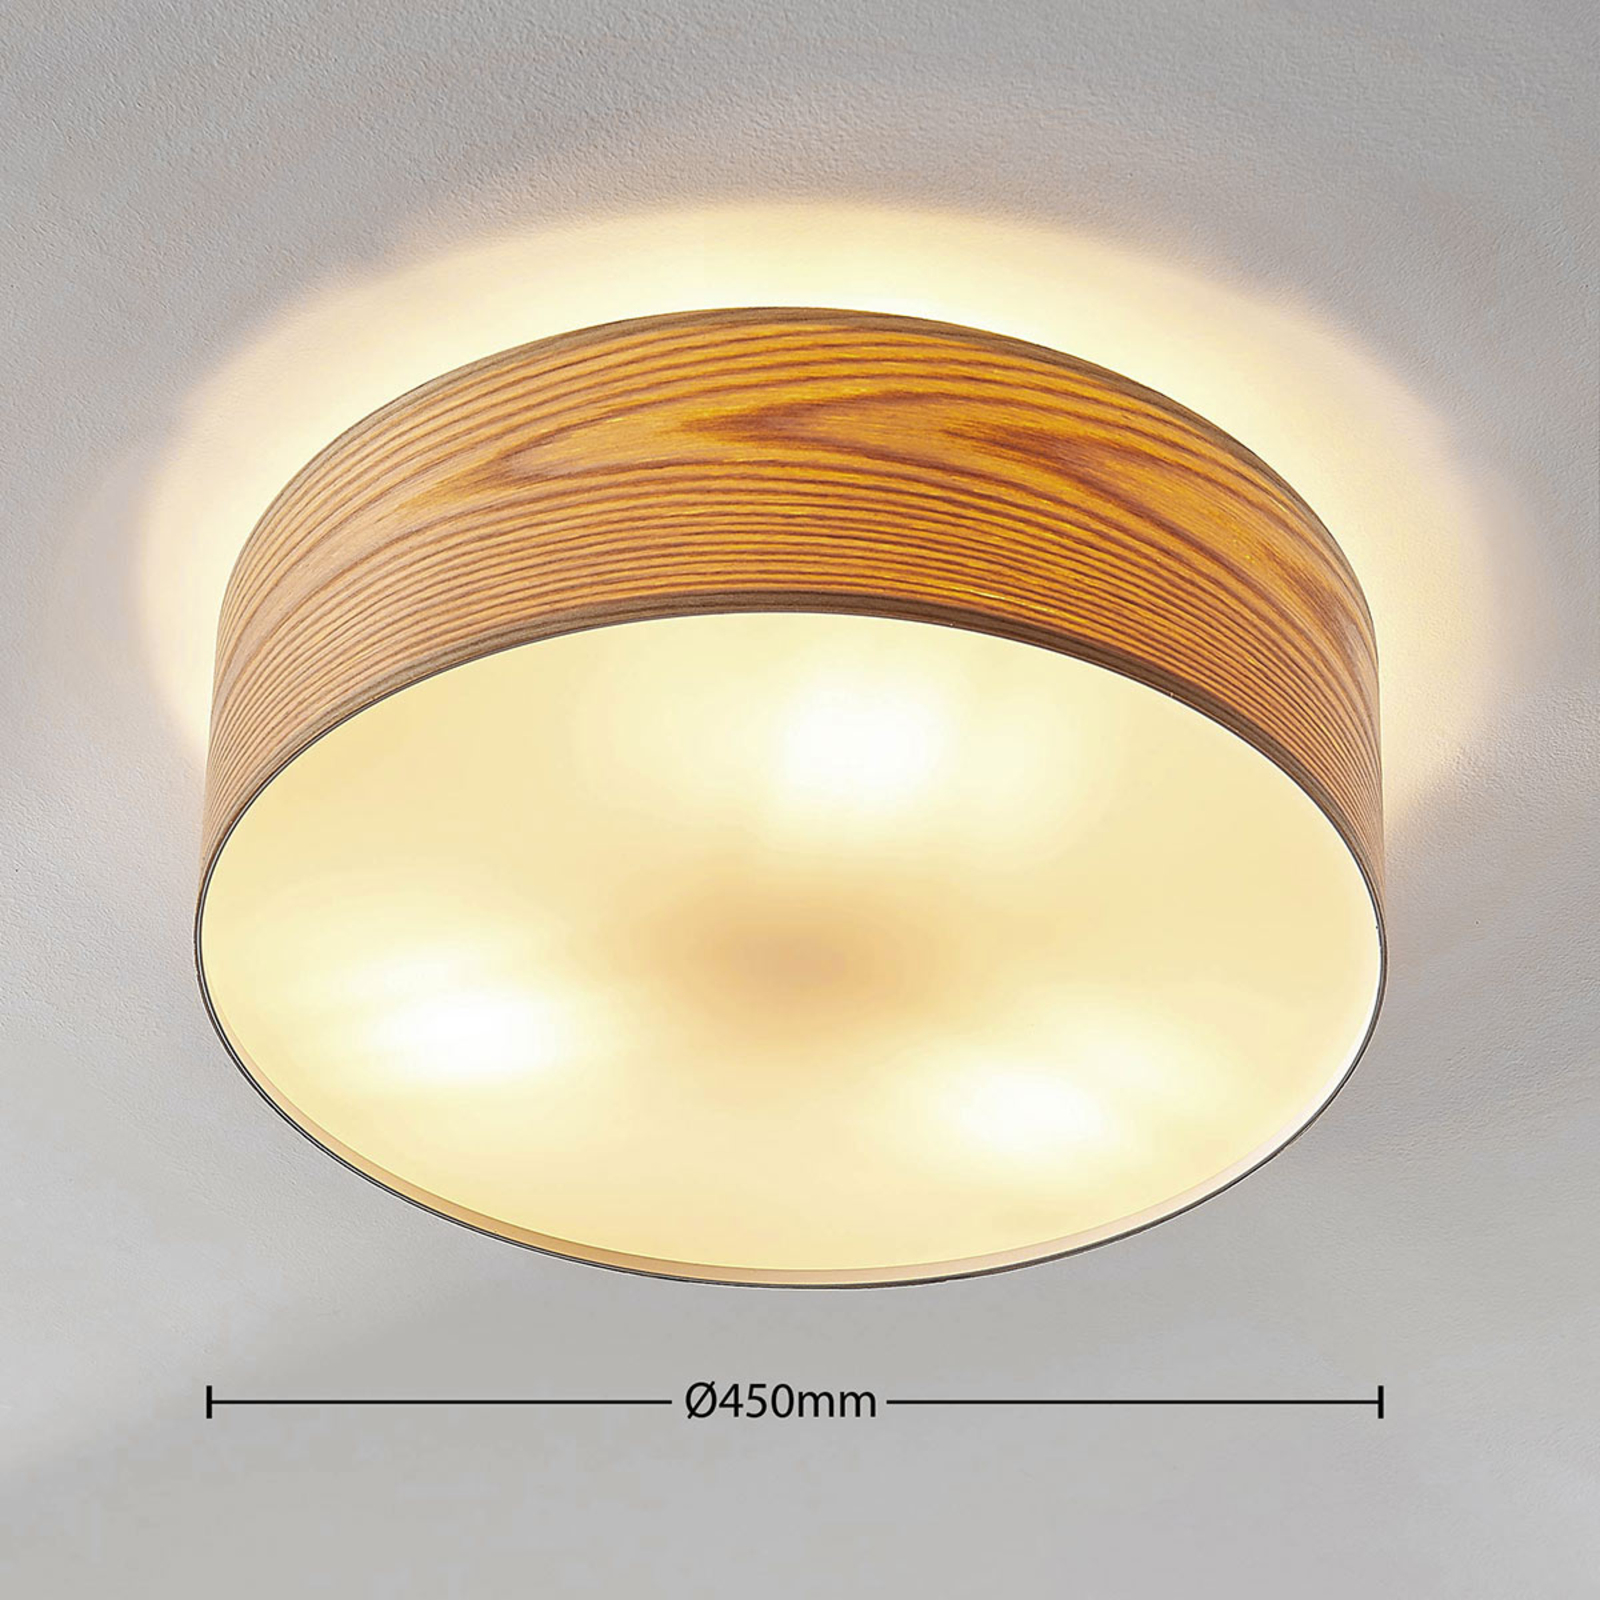 Houten plafondlamp Dominic in ronde vorm